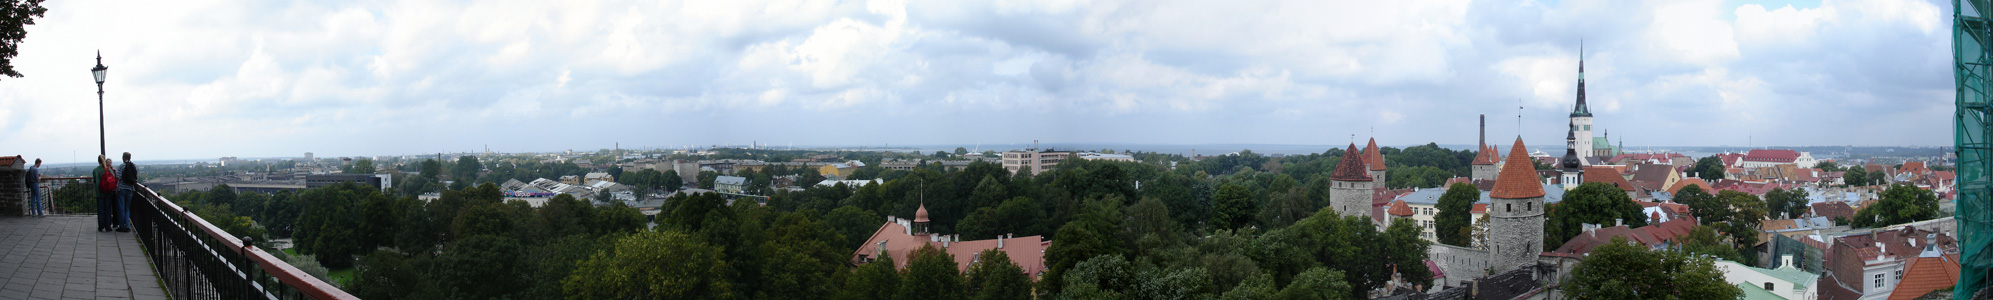 Toompea, Tallinn (Estonia)